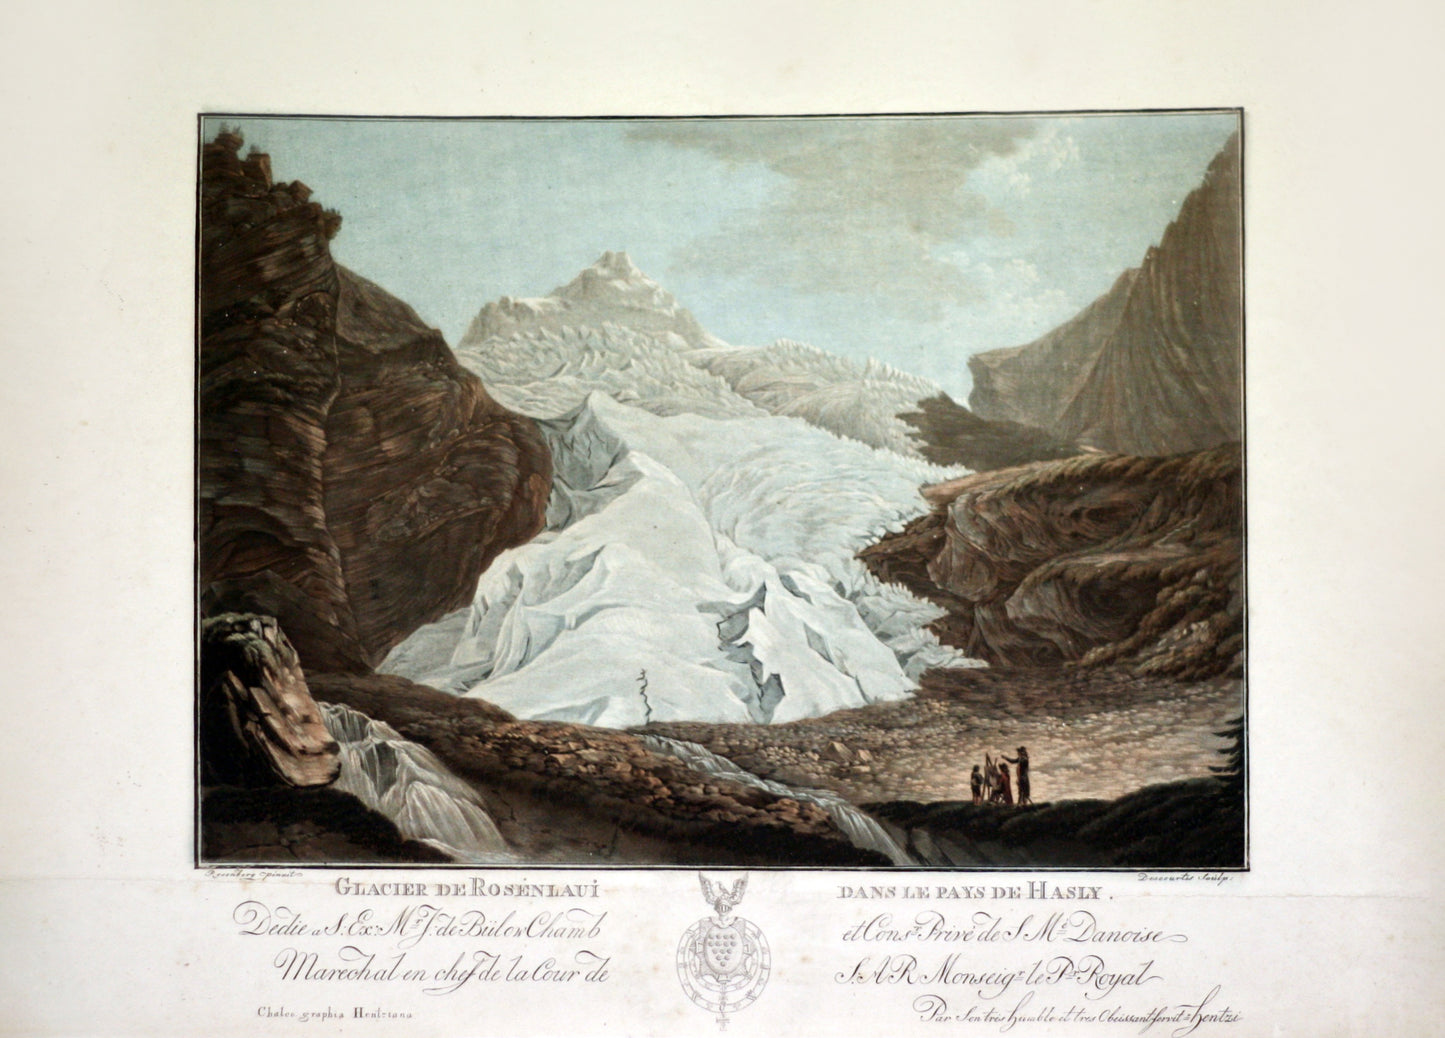 Glacier de Rosenlaui